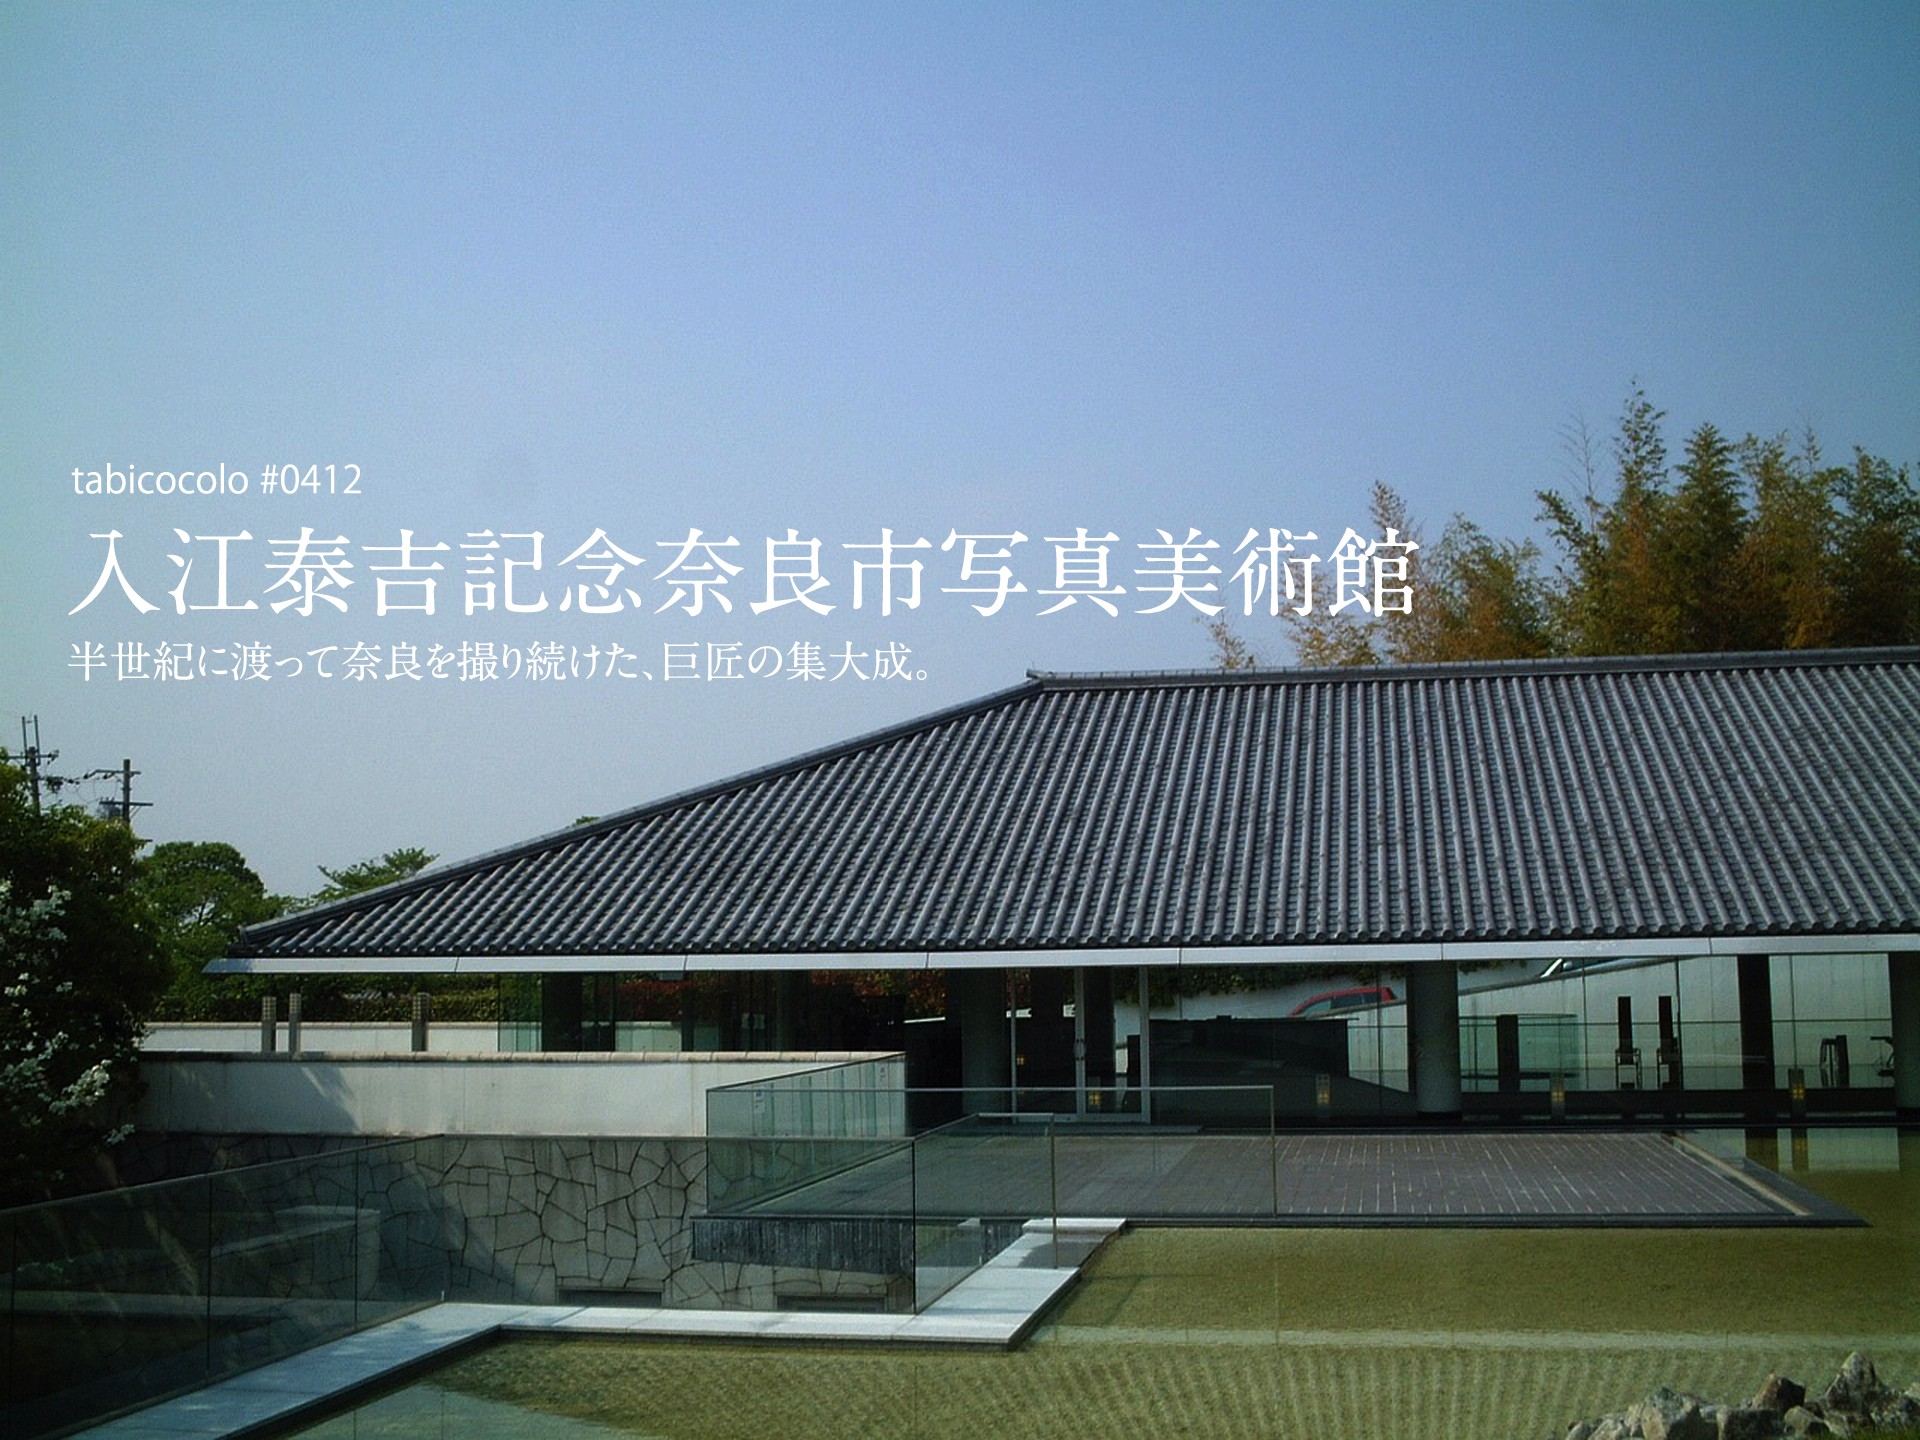 入江泰吉記念奈良市写真美術館